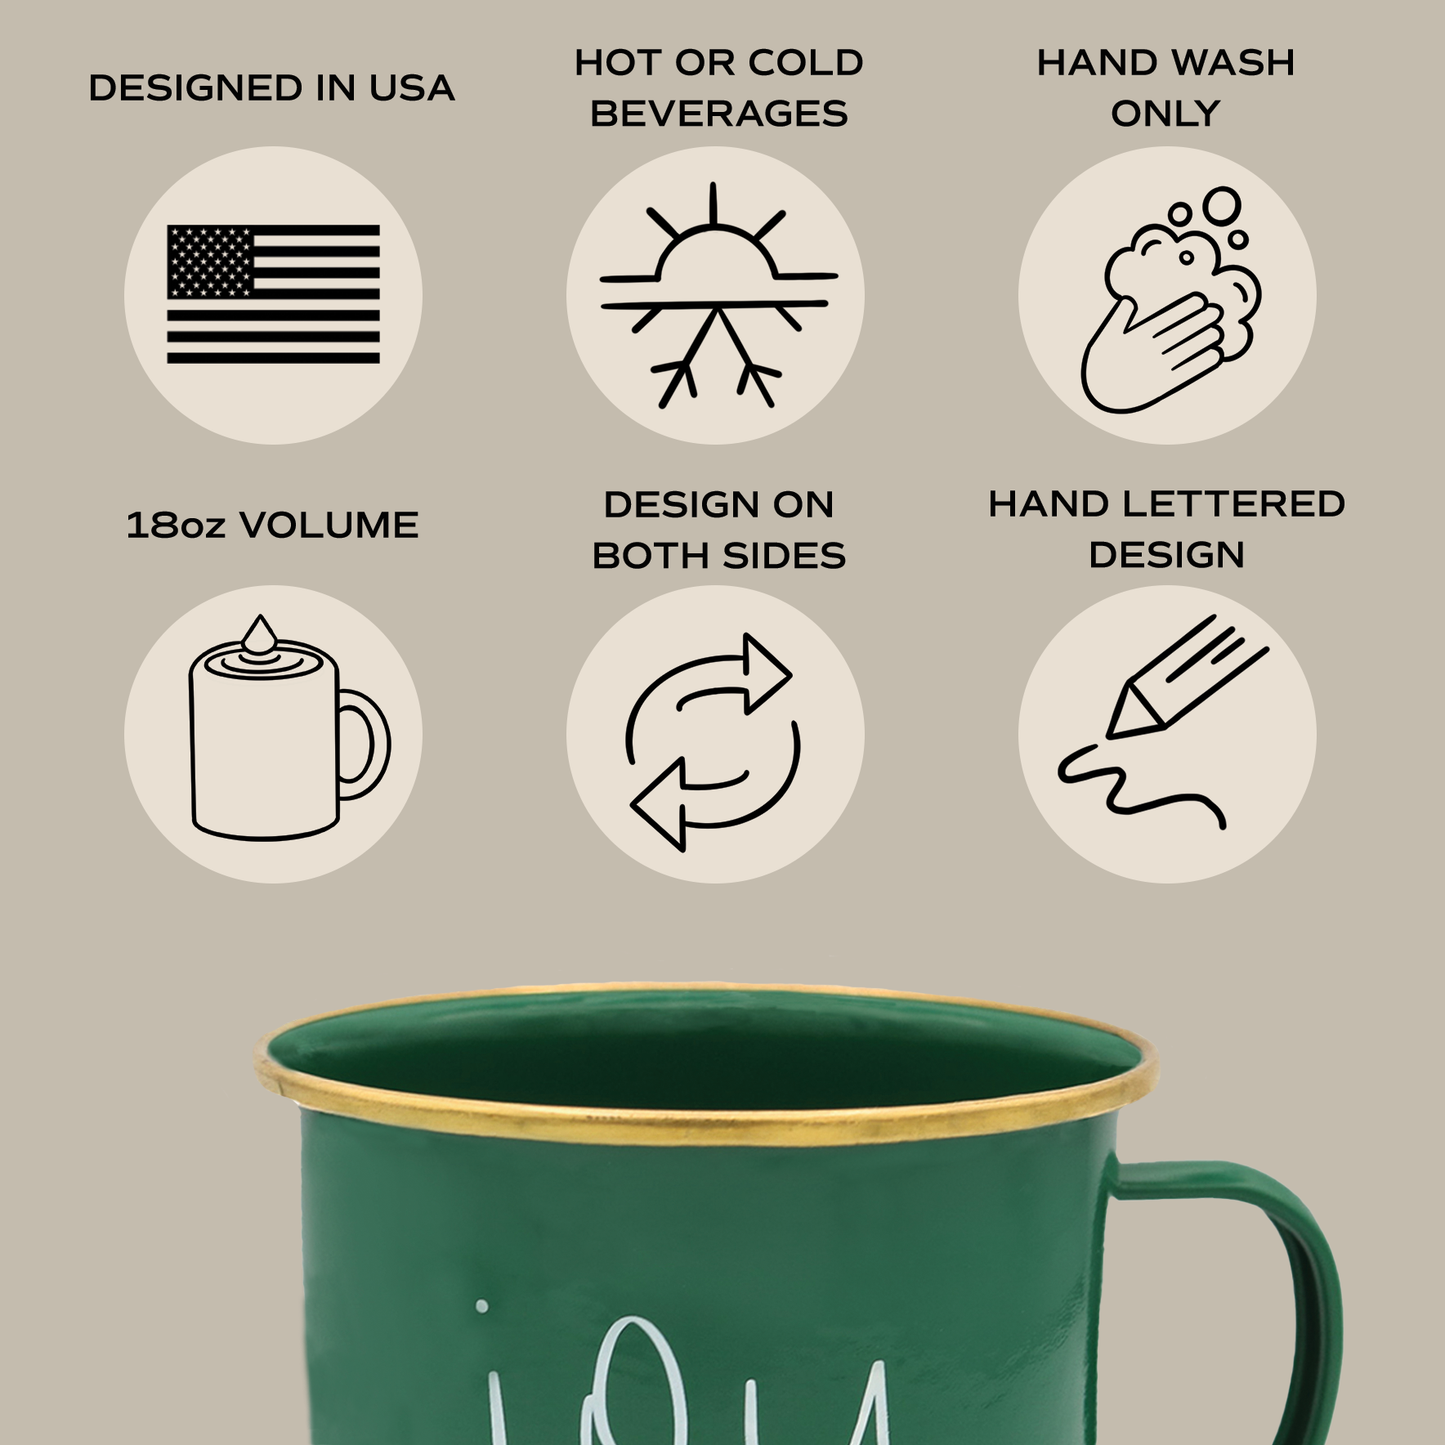 Joy Coffee Mug - Christmas Home Decor & Gifts